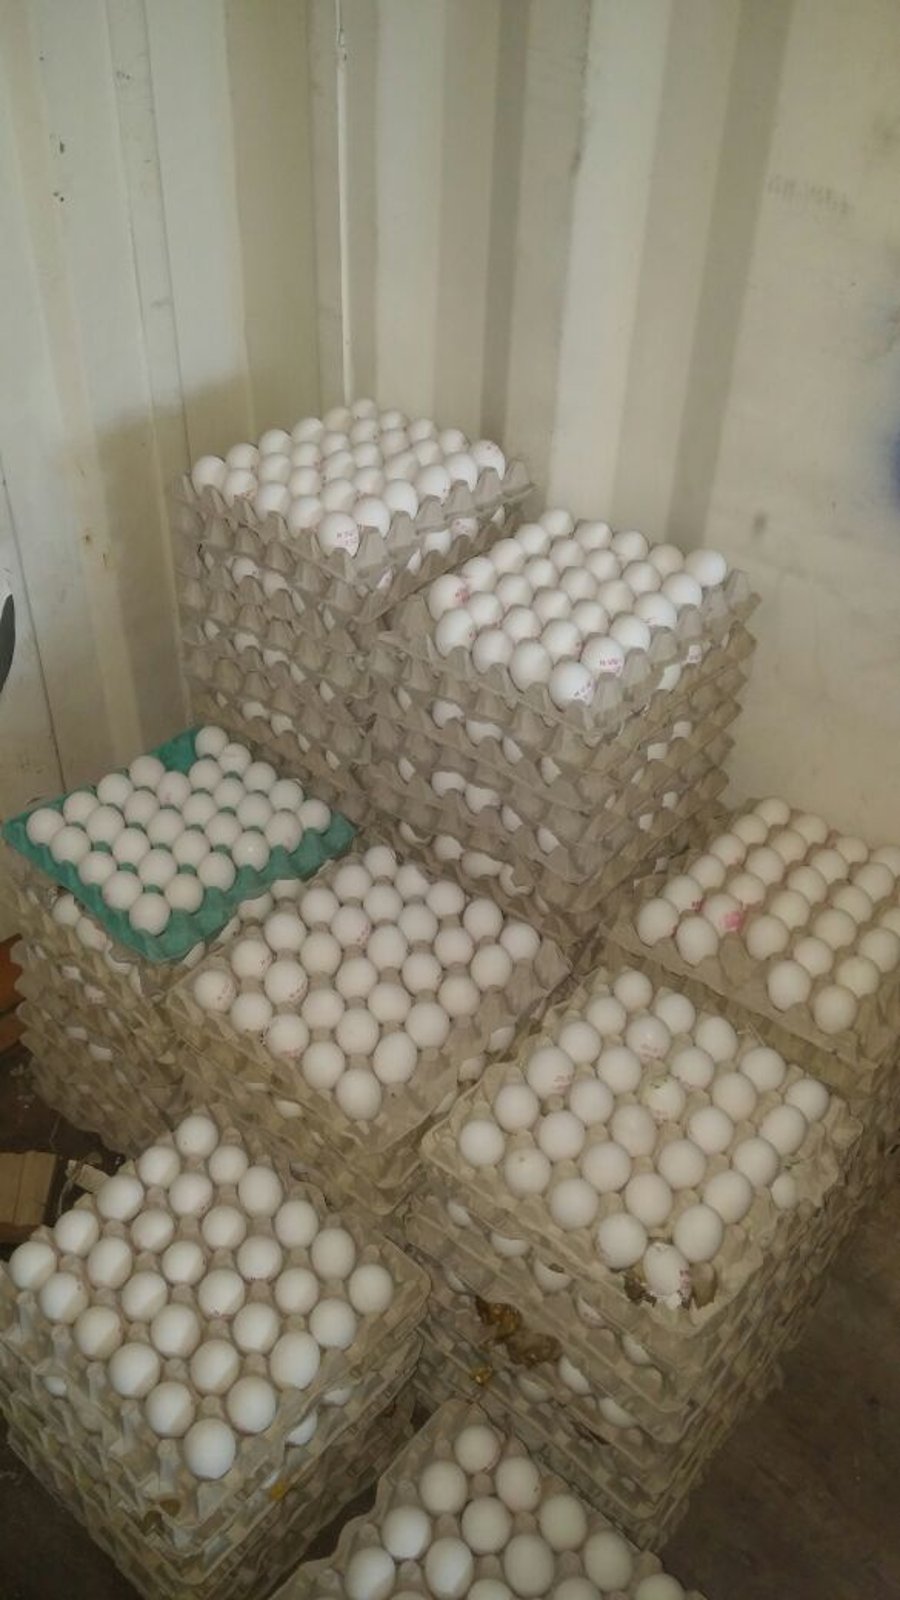 אלפי ביצים מוברחות נתפסו בדרך לשיווק בירושלים